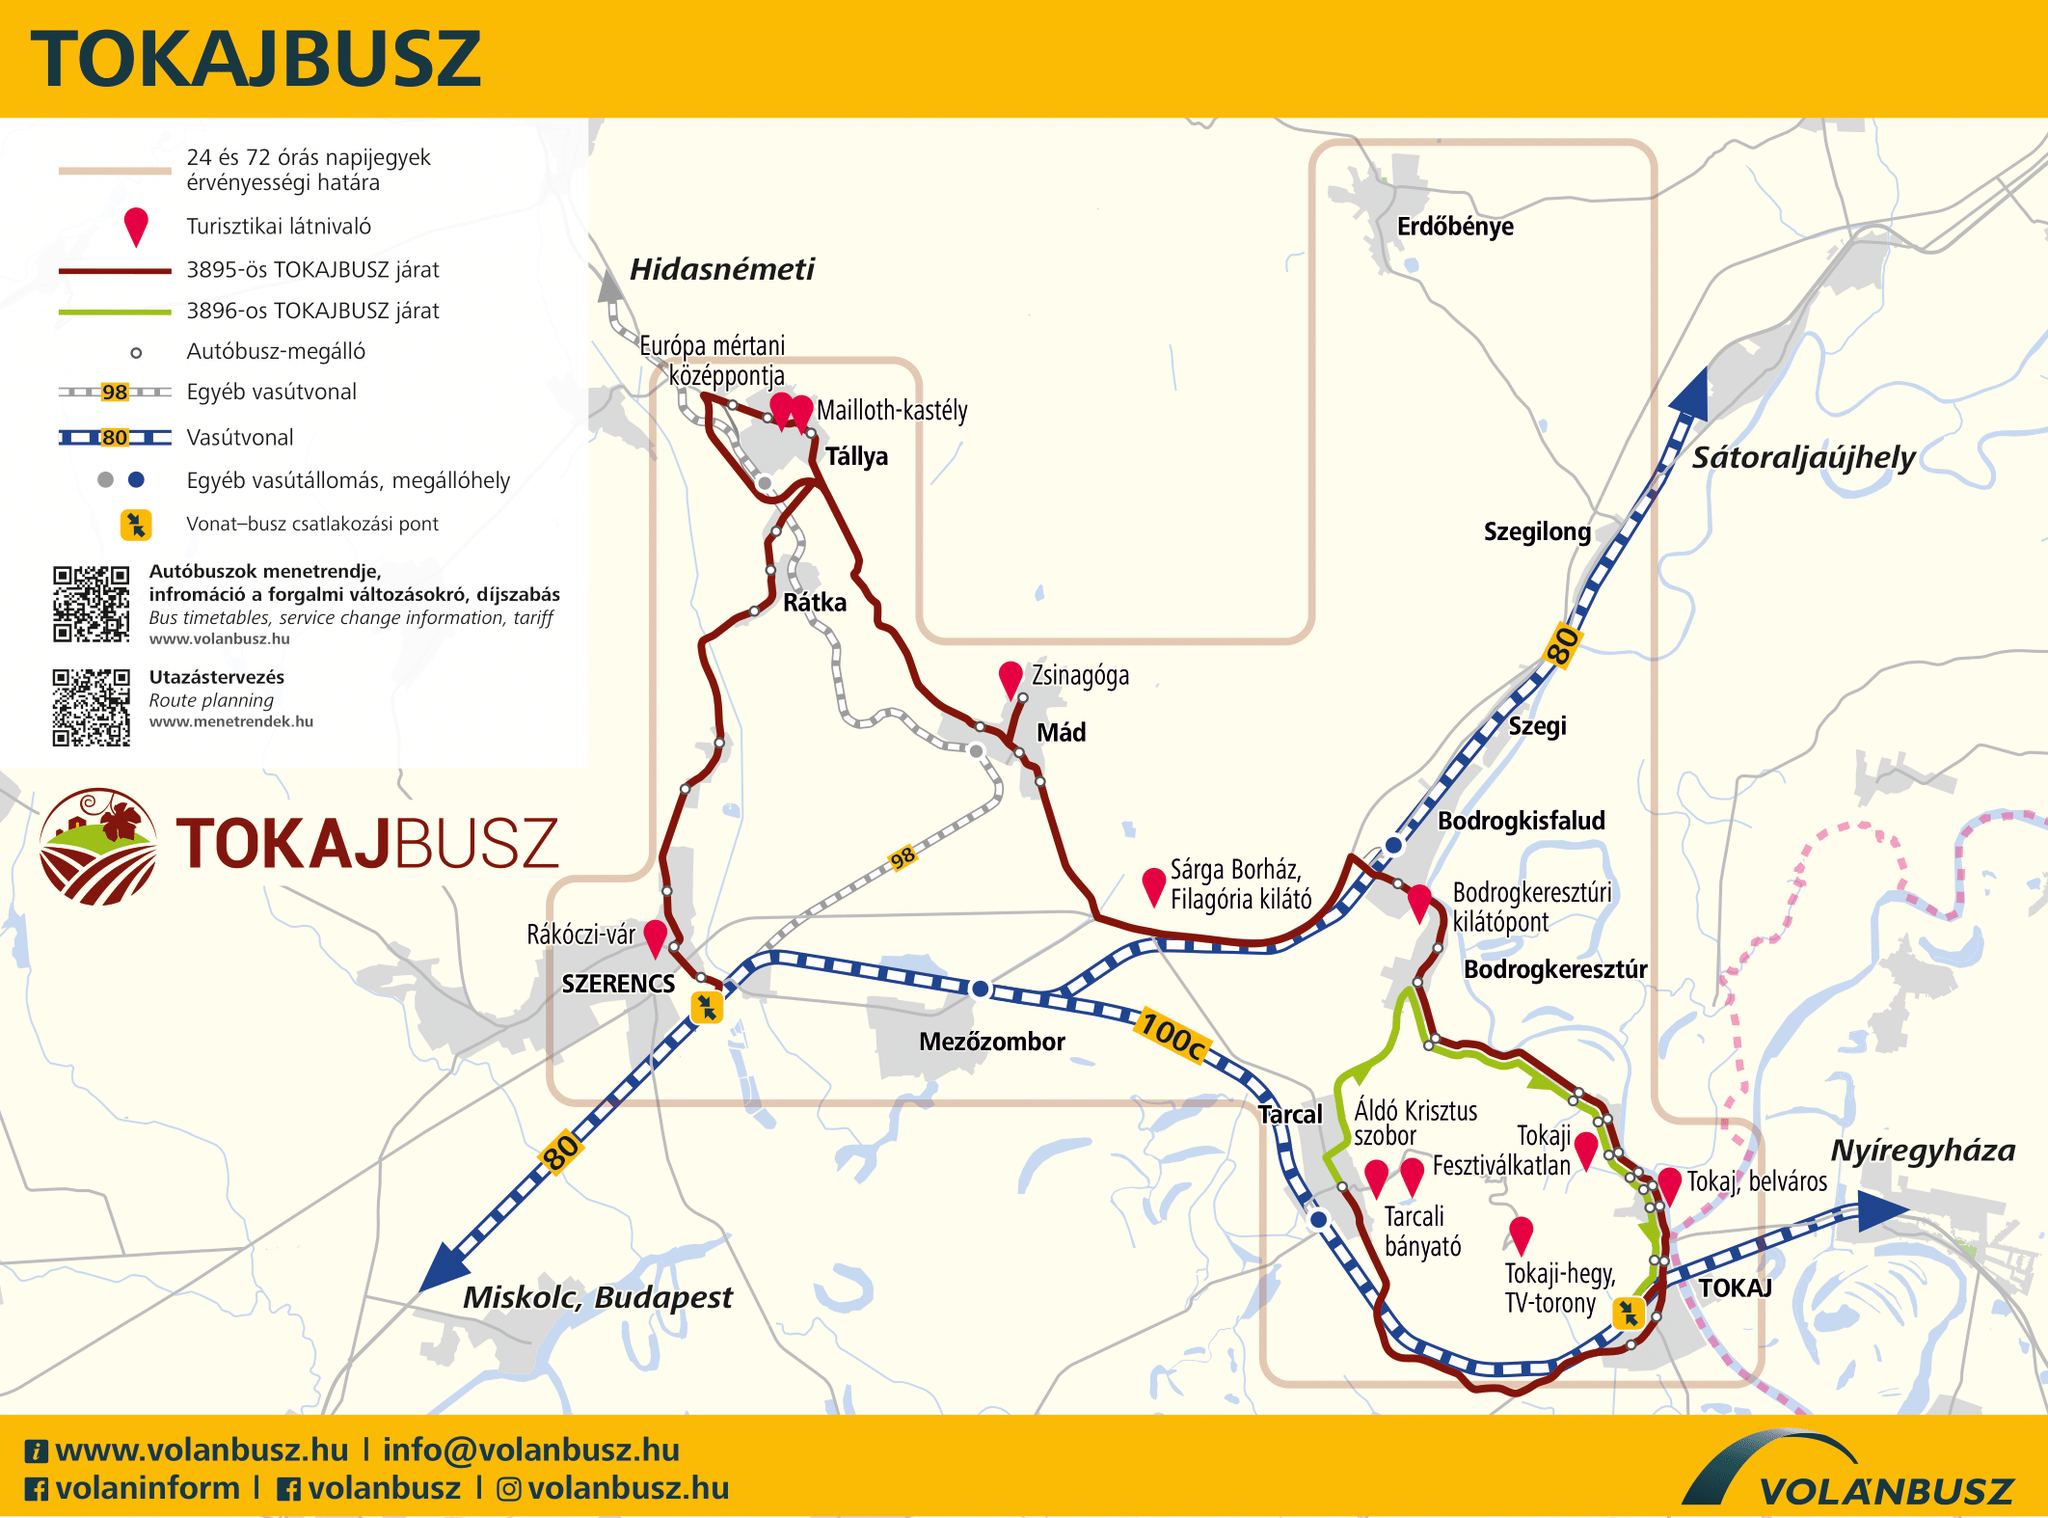 A Tokajbusz-járatokkal a borvidék több települése könnyen elérhető (térkép forrása: Volánbusz)